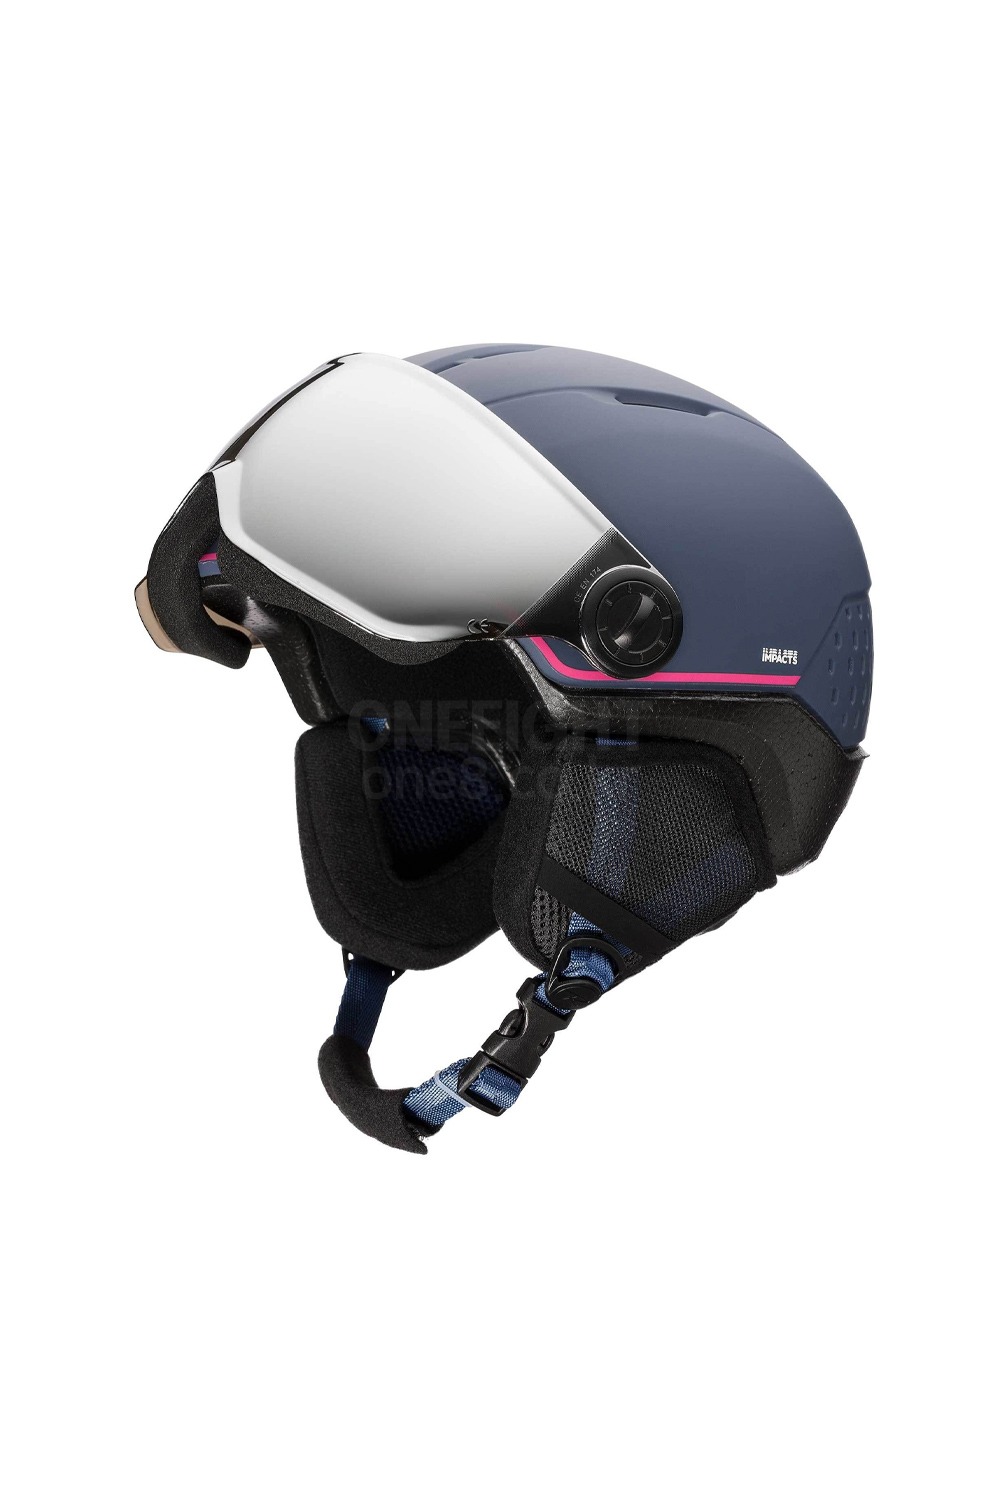 로시놀 스키/스노우 바이저 헬멧 우피 임팩트 ROSSIGNOL WHOOPEE VISOR IMPACTS_BLUE/PINK_키즈/주니어_DFRS005BP